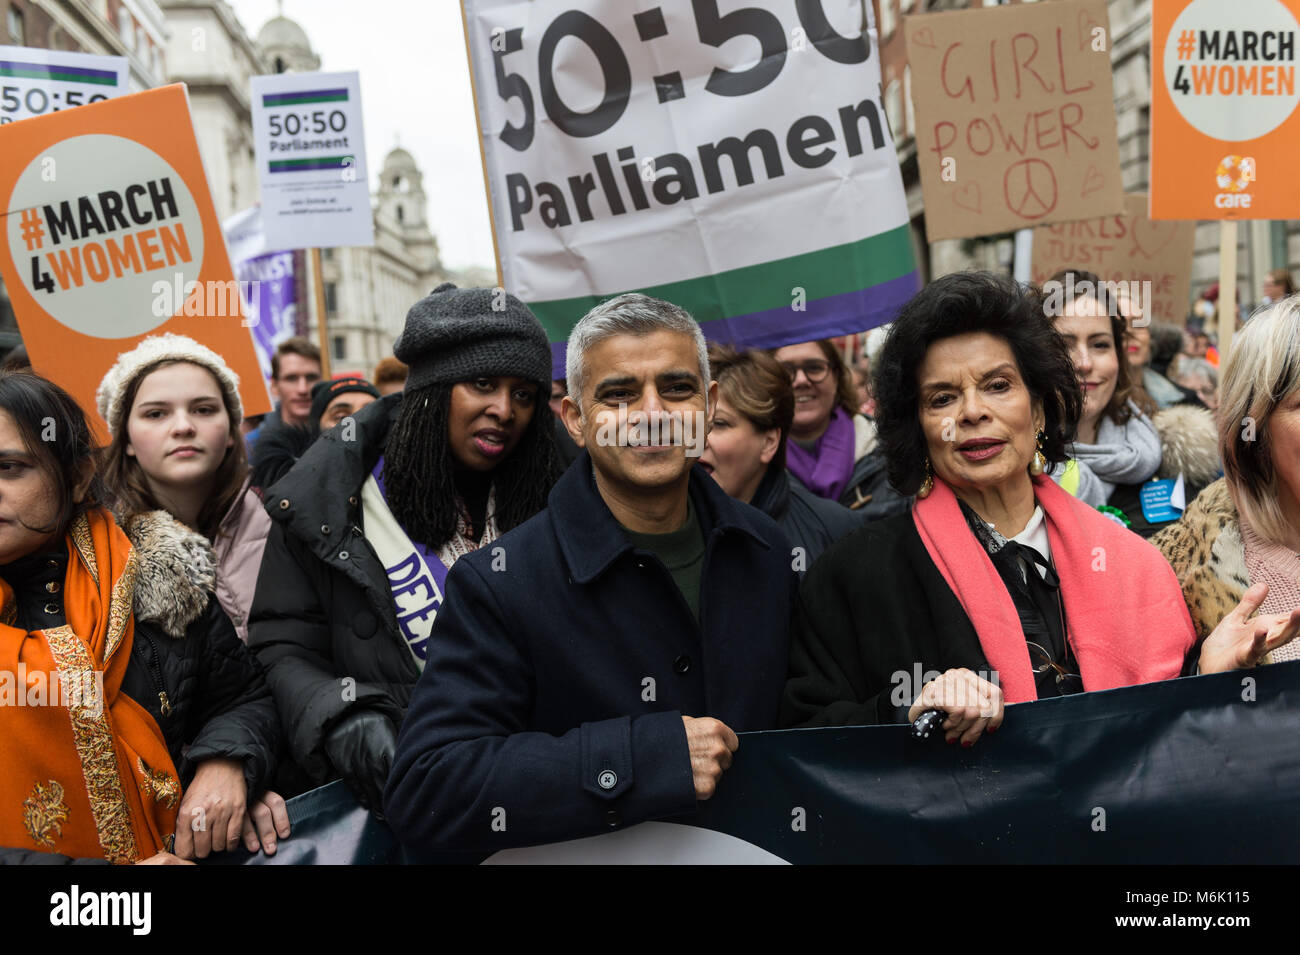 London, Großbritannien. 4. März, 2018. Dawn Butler MP (3L), Bürgermeister von London Sadiq Khan (C) und Aktivistin Bianca Jagger (2R) schlossen sich Tausende von Menschen, darunter Politiker, Prominente und Aktivisten Marsch von den Häusern des Parlaments zu einer Kundgebung auf dem Trafalgar Square in London während der jährlichen März 4 Frauen Internationaler Frauentag und 100 Jahre da Frauen im Vereinigten Königreich erstmals zu kennzeichnen das Wahlrecht erlangt. Die Veranstaltung, die von CARE International organisiert und soll die Ungleichheit konfrontiert, die von Frauen und Mädchen auf der ganzen Welt und die Kampagne für die Gleichstellung der Geschlechter und die Rechte der Frauen weltweit zu markieren. Credit: Wiktor Szymanowic Stockfoto